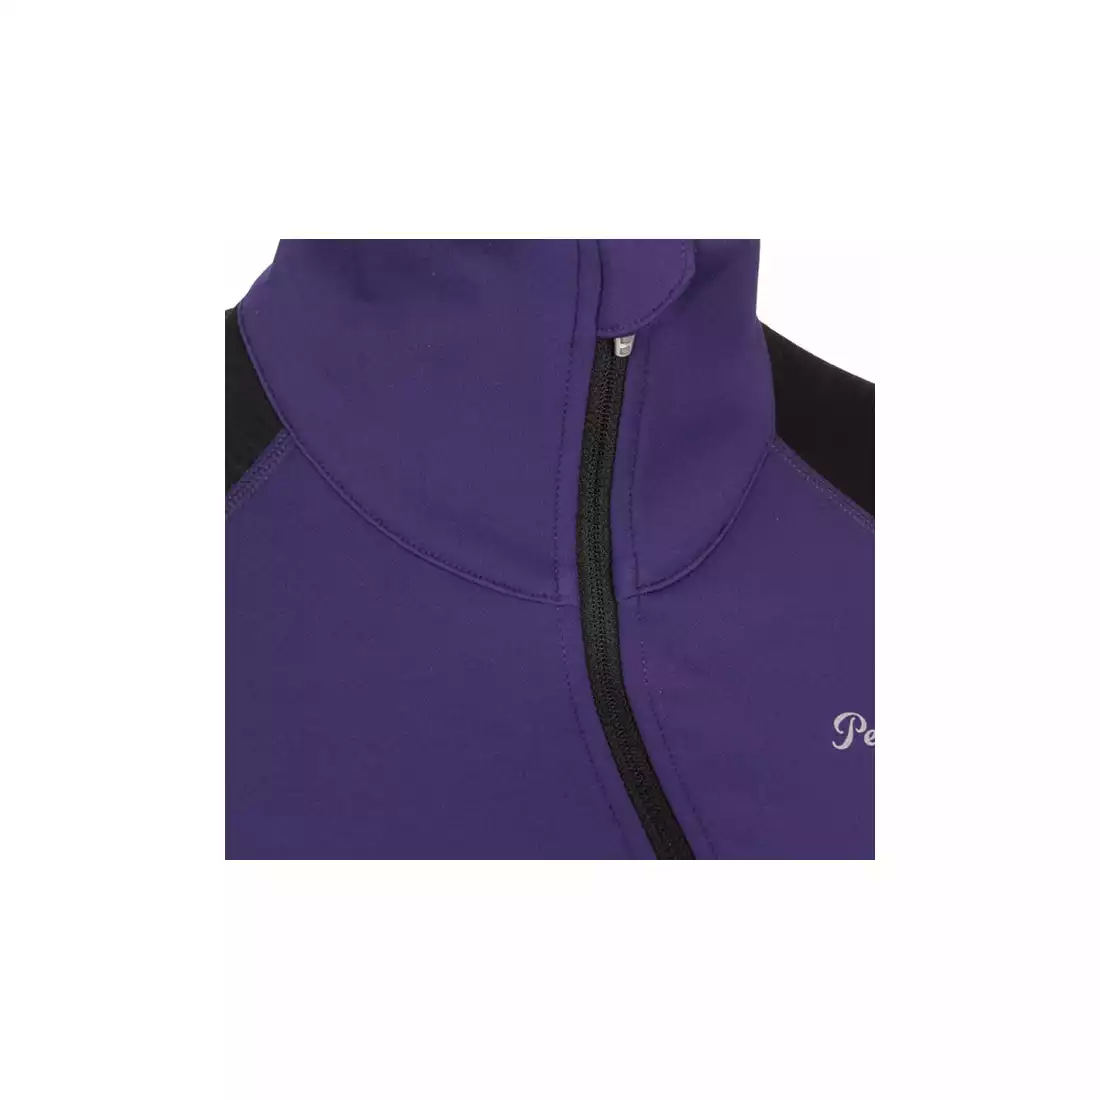 PEARL IZUMI Fly Thermal 12221404-3ZW - damska bluza biegowa, kolor: fioletowy